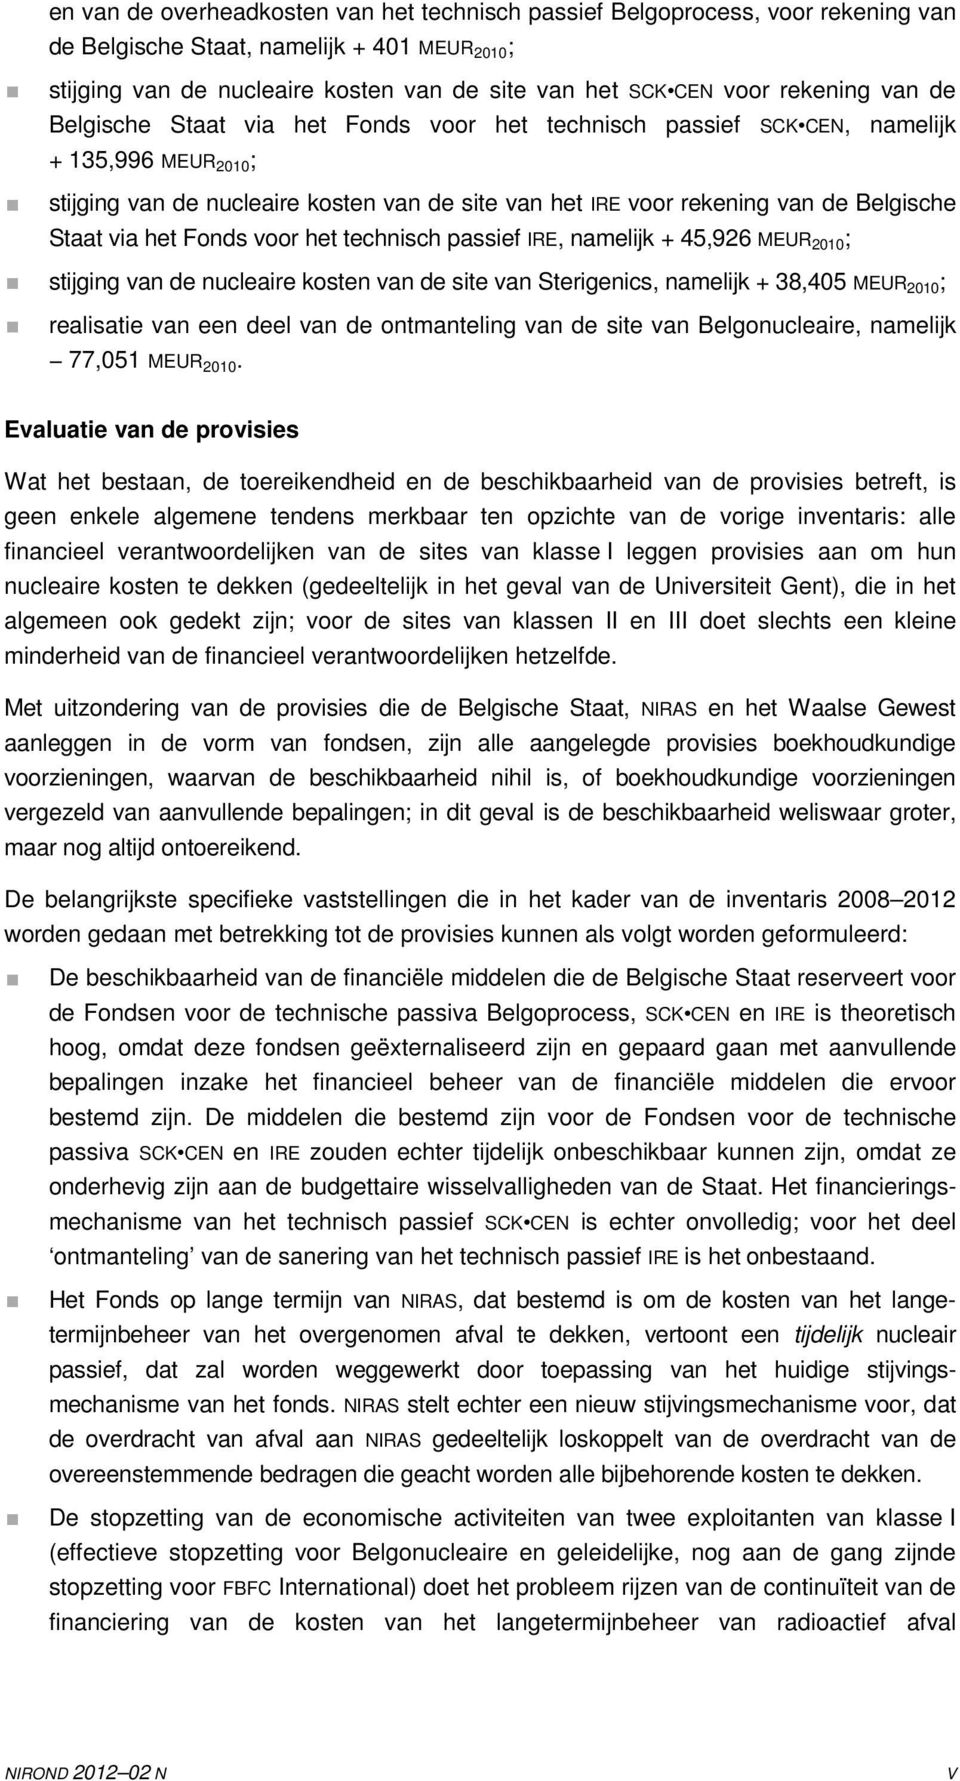 Belgische Staat via het Fonds voor het technisch passief IRE, namelijk + 45,926 MEUR 2010 ; stijging van de nucleaire kosten van de site van Sterigenics, namelijk + 38,405 MEUR 2010; realisatie van